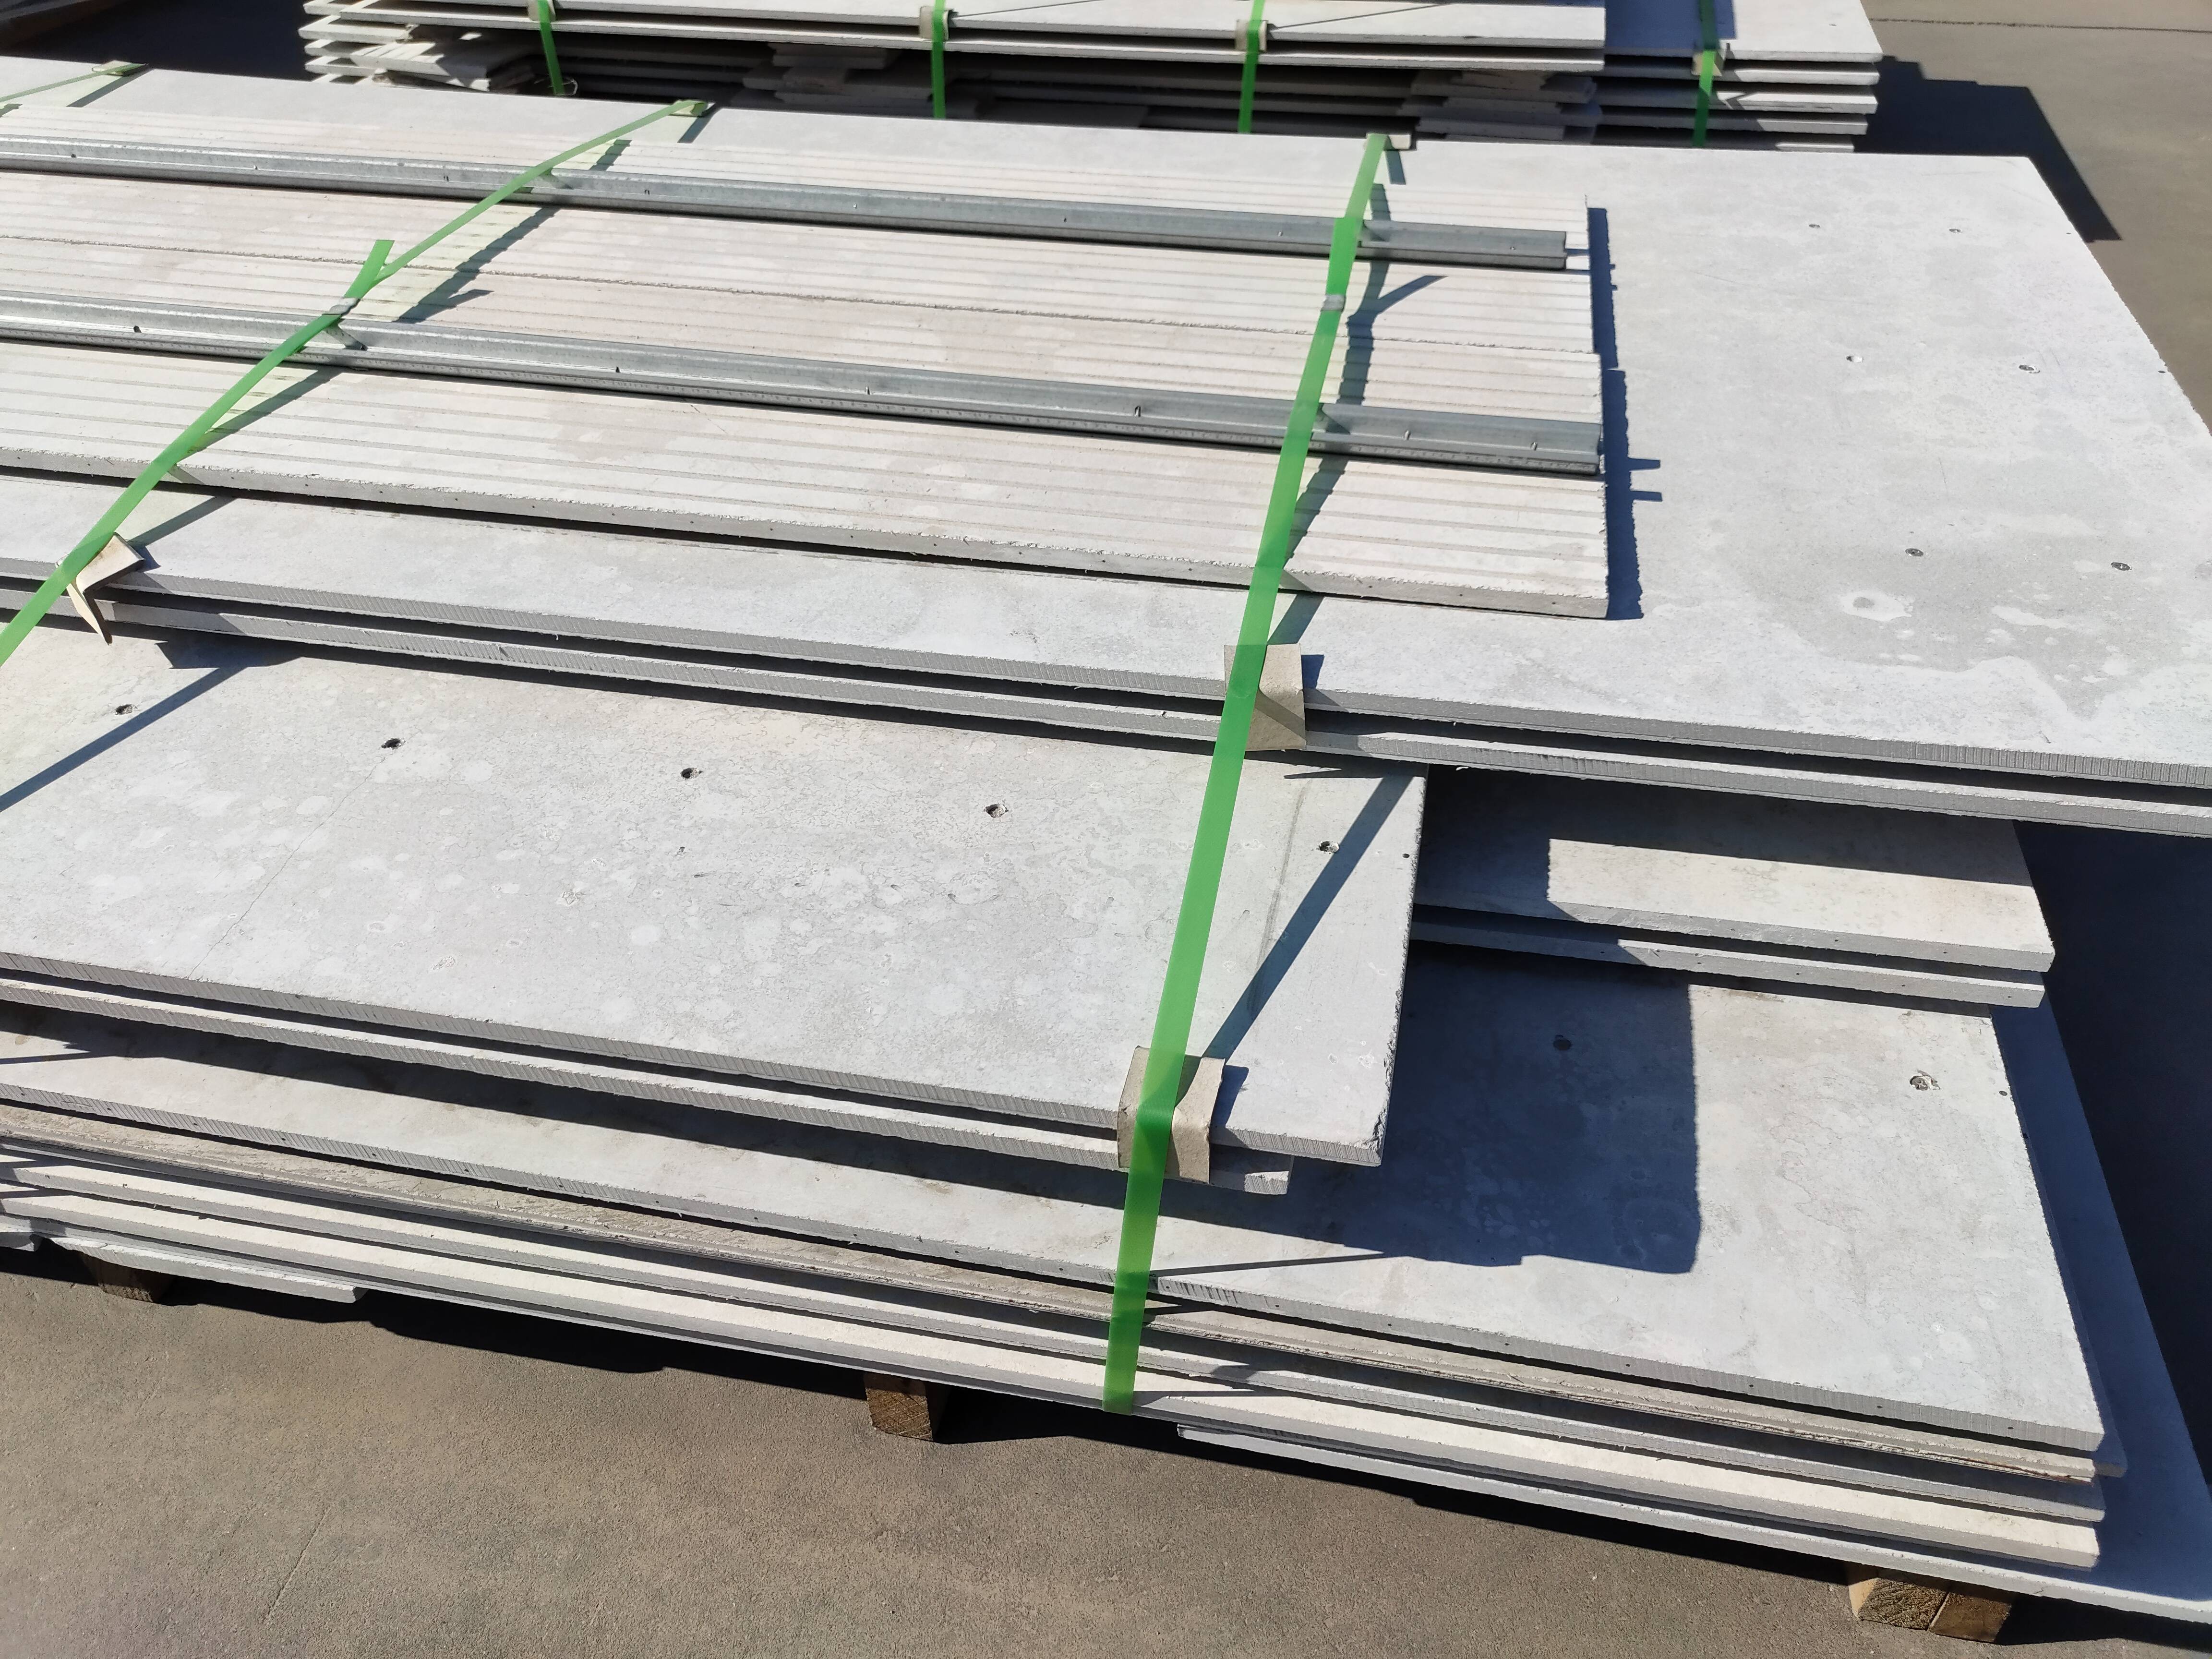 纤维水泥板|CCA板|板材|CCA板批发|钢筋桁架楼承板|TD板-汉德邦建材:装配式绿色建筑系统材料供应商,让每一栋建筑都采用绿色\安全\节能建材